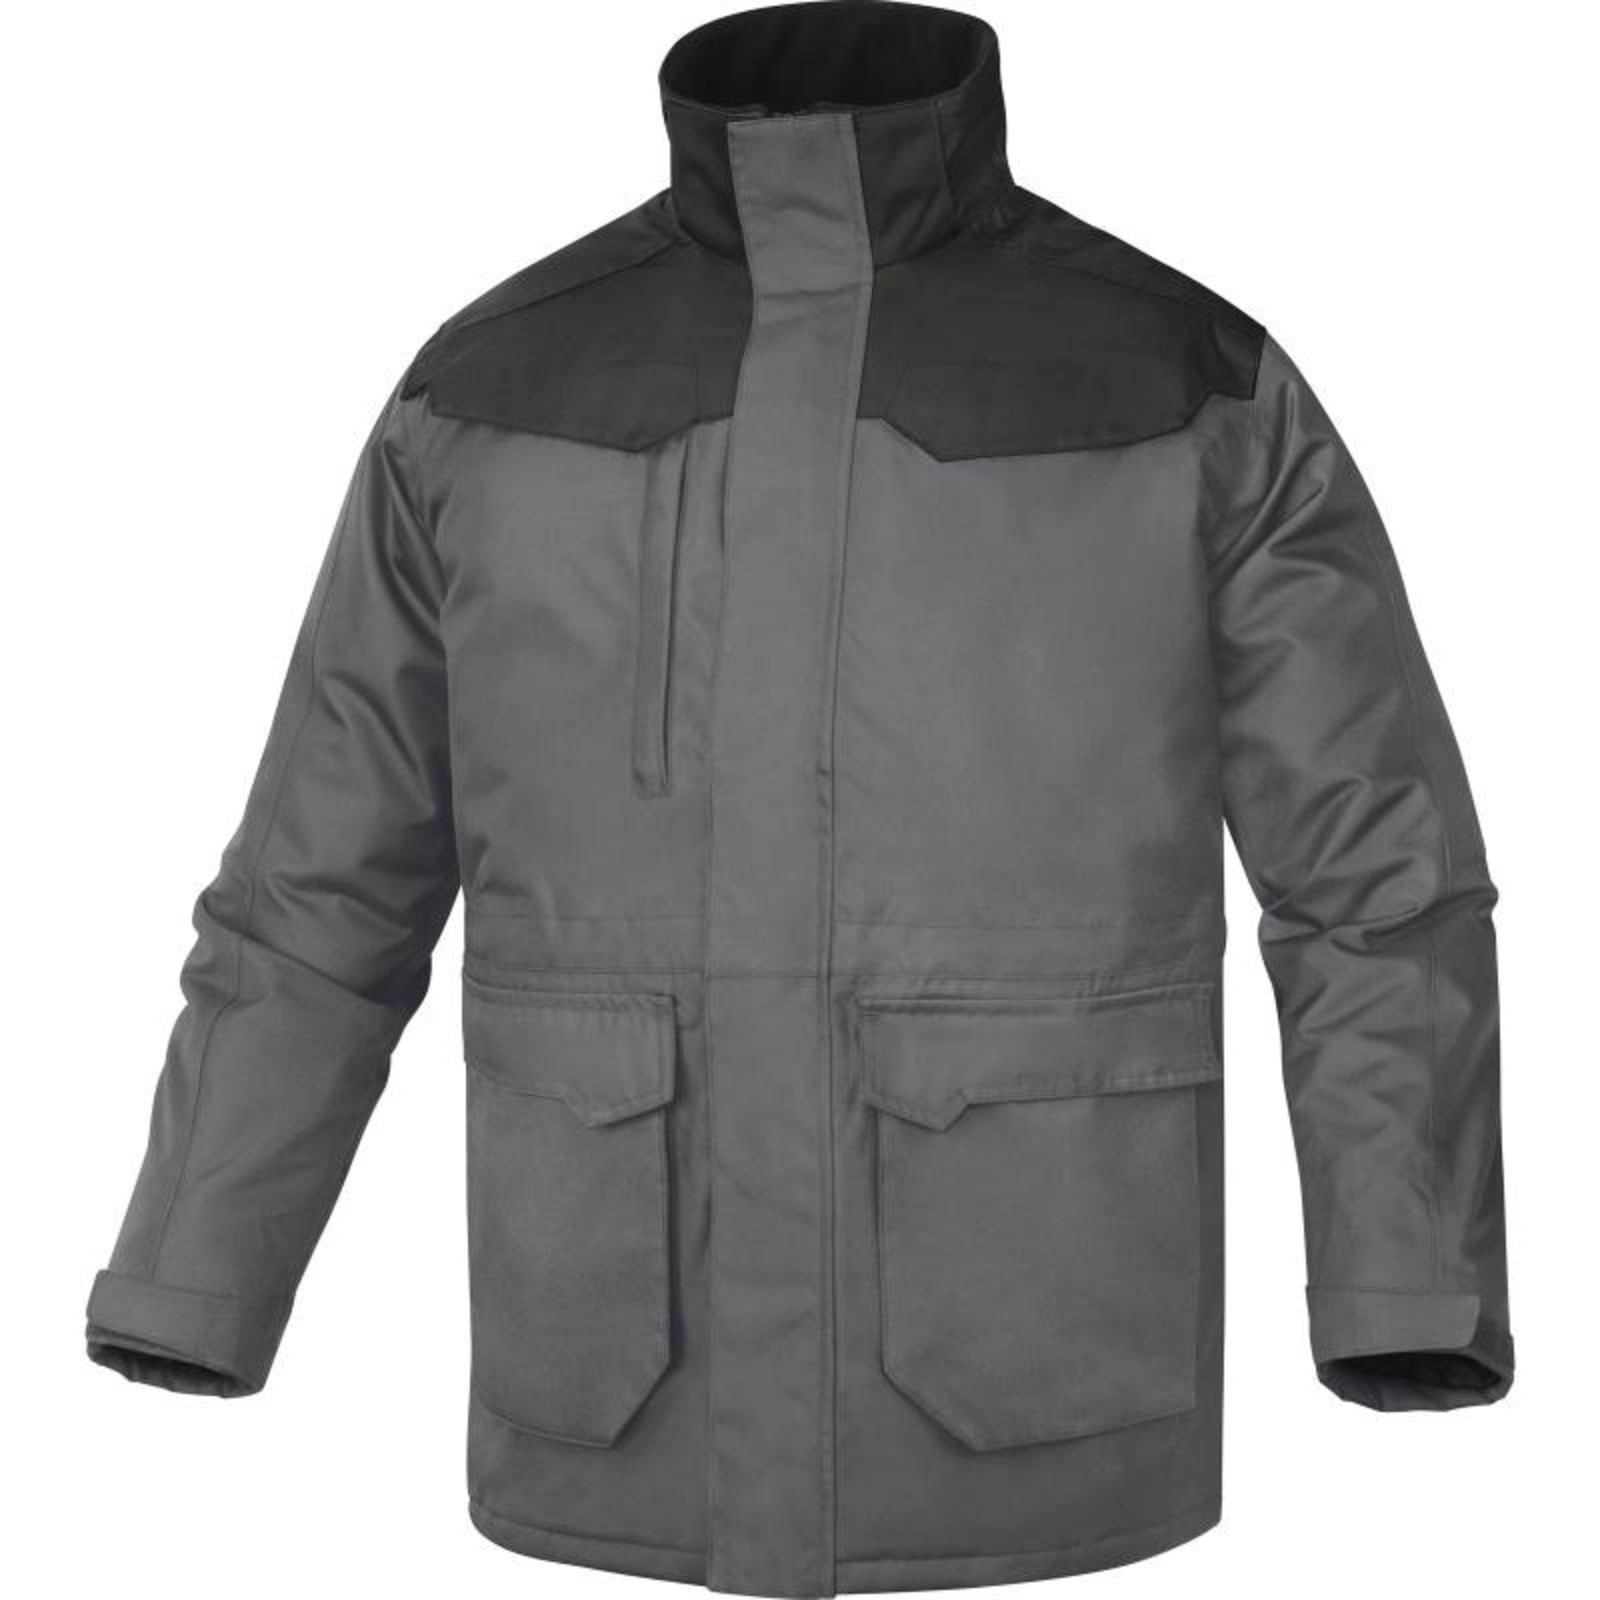 Zimná bunda Delta Plus Carson2 - veľkosť: S, farba: sivá/čierna